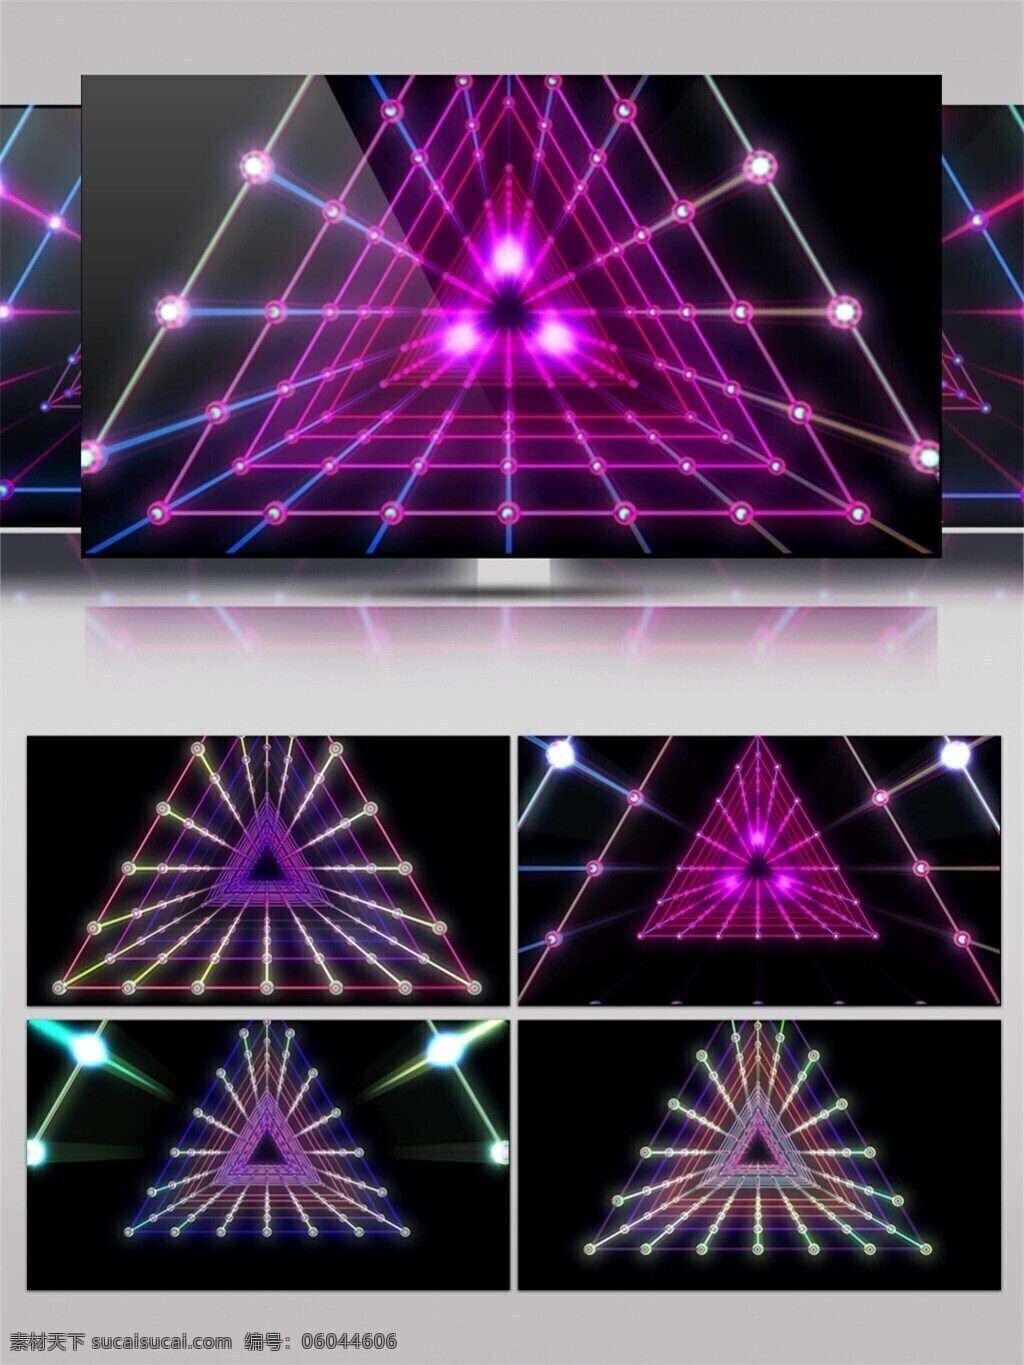 紫色 光束 三角 高清 视频 节目灯光 立体 三维 视觉享受 唯美背景素材